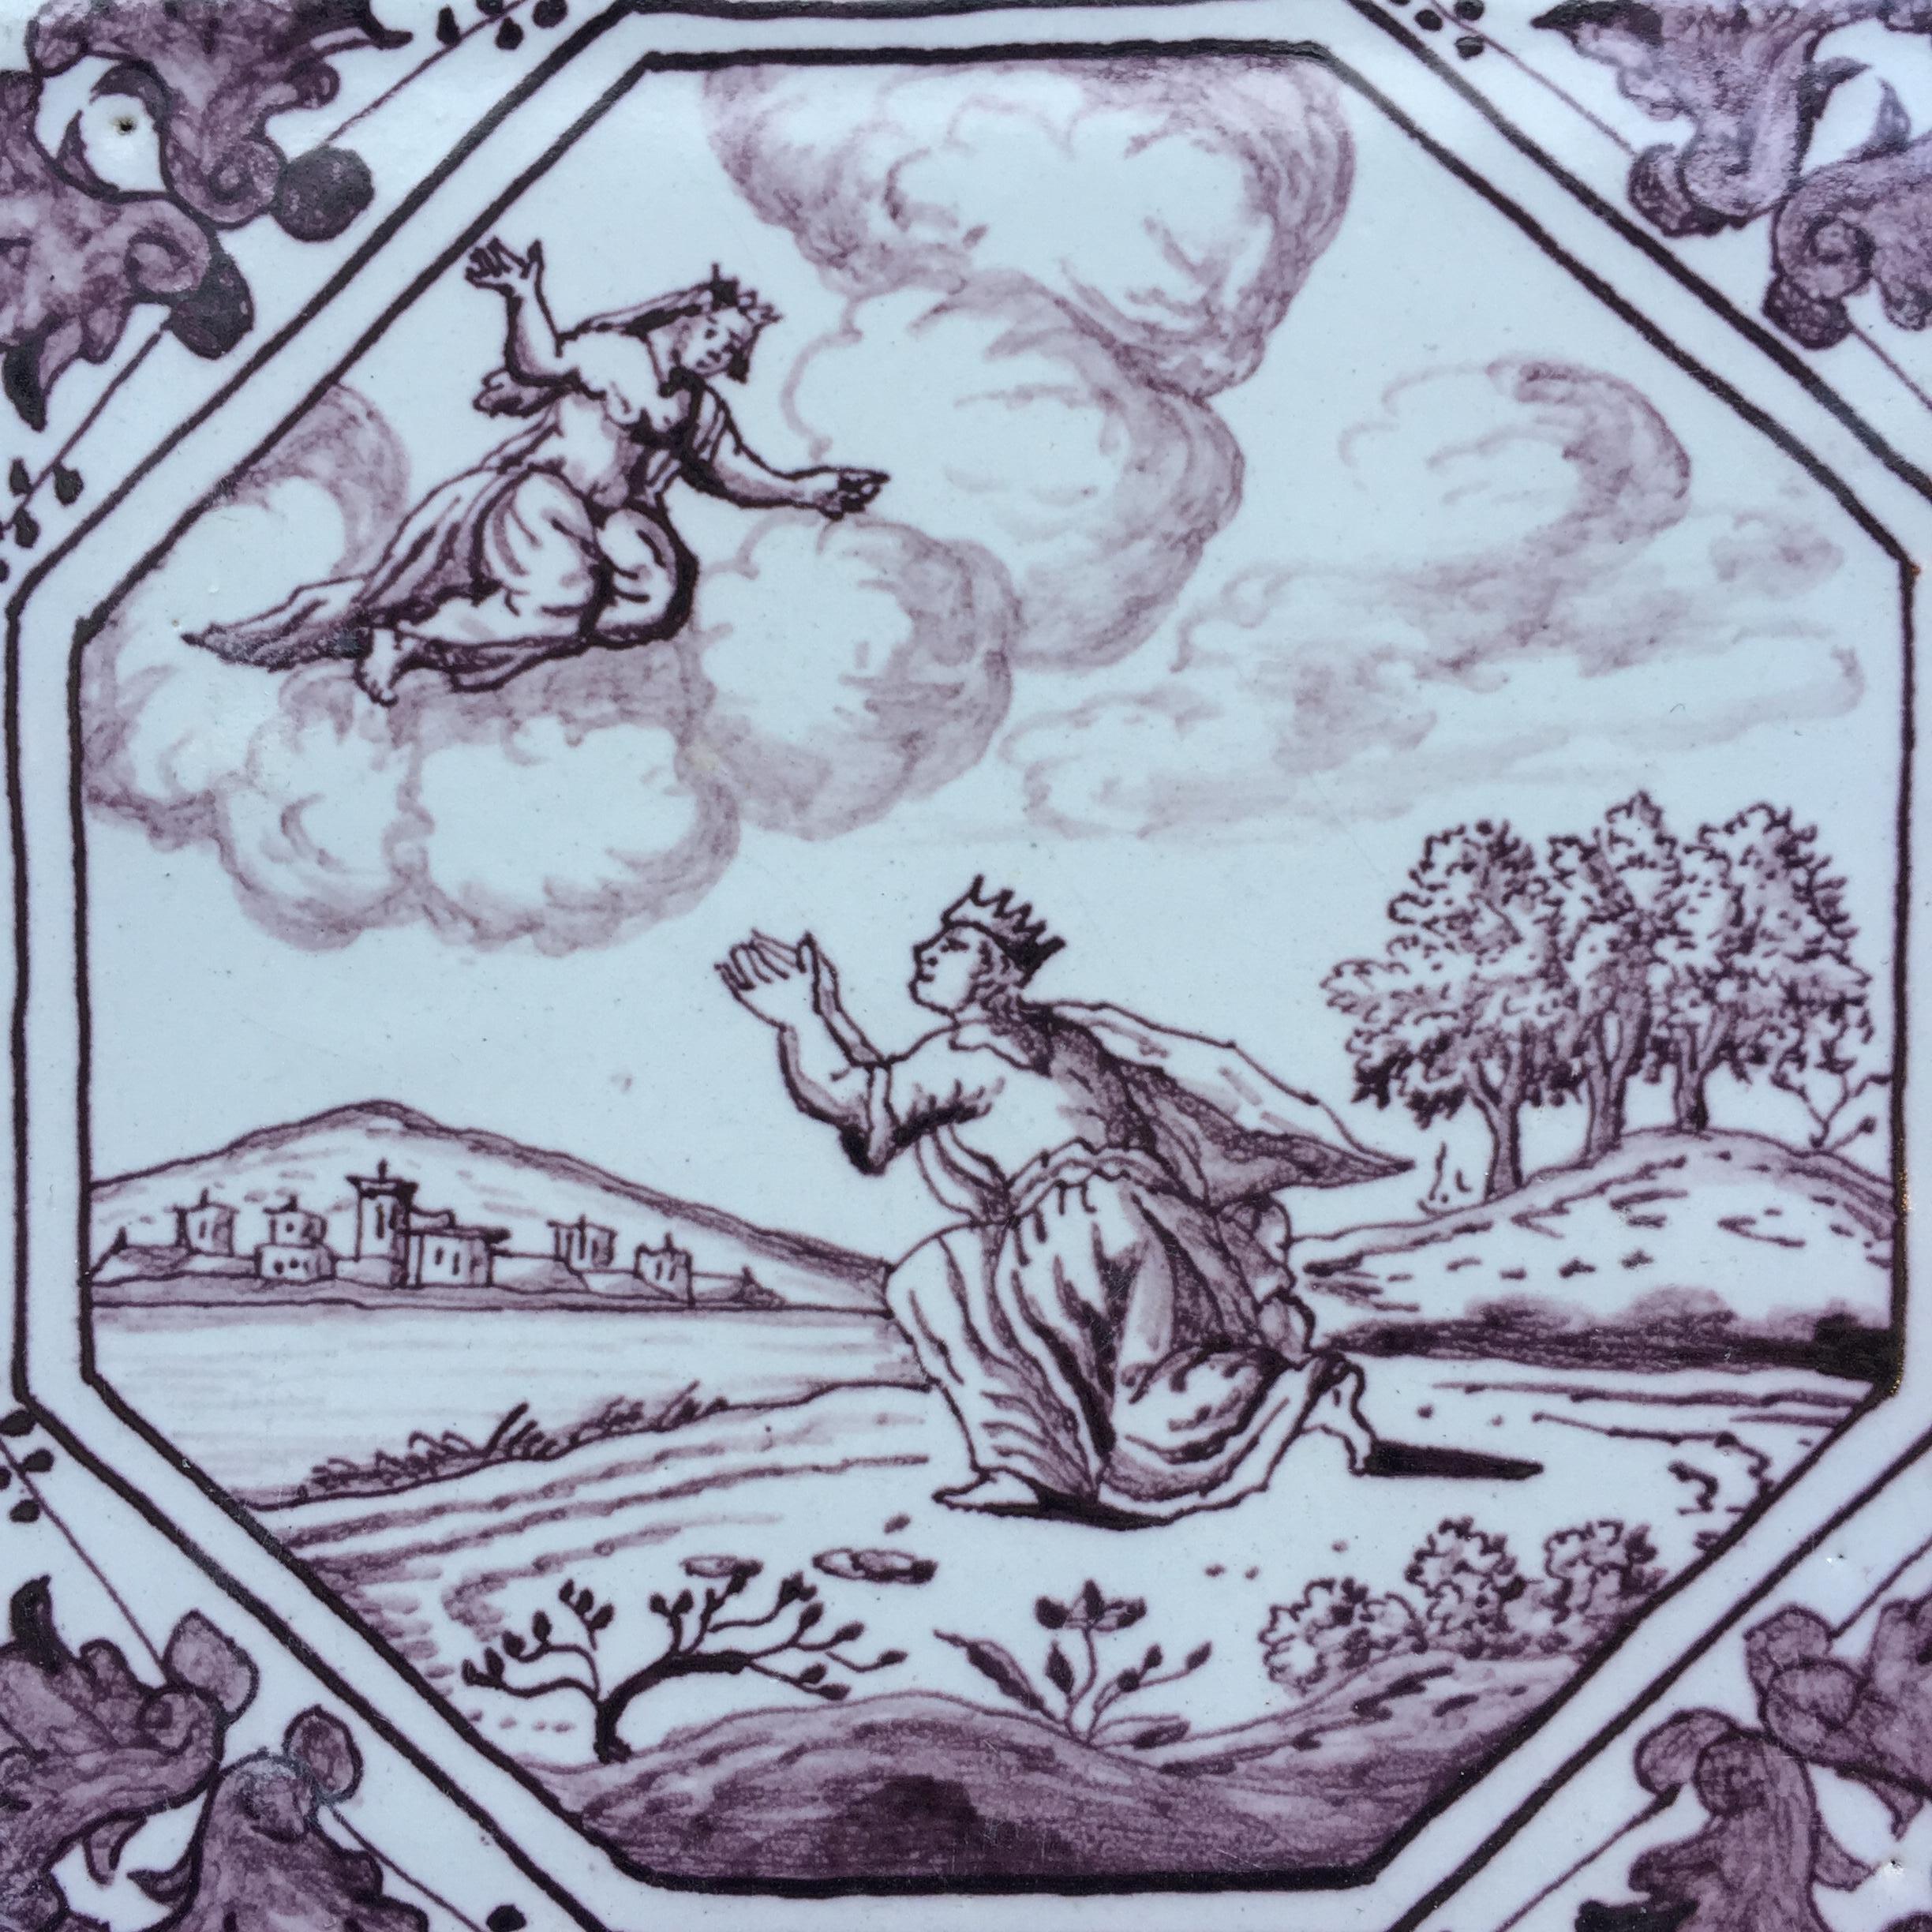 Rotterdam
C. 1740
Atelier de Hendrick Schut

Un très beau carreau peint avec une décoration mythologique d'après Ovidius.
Ce qui est particulier, c'est que cette tuile présente une décoration tirée de la mythologie romaine, qui n'est pas liée à la